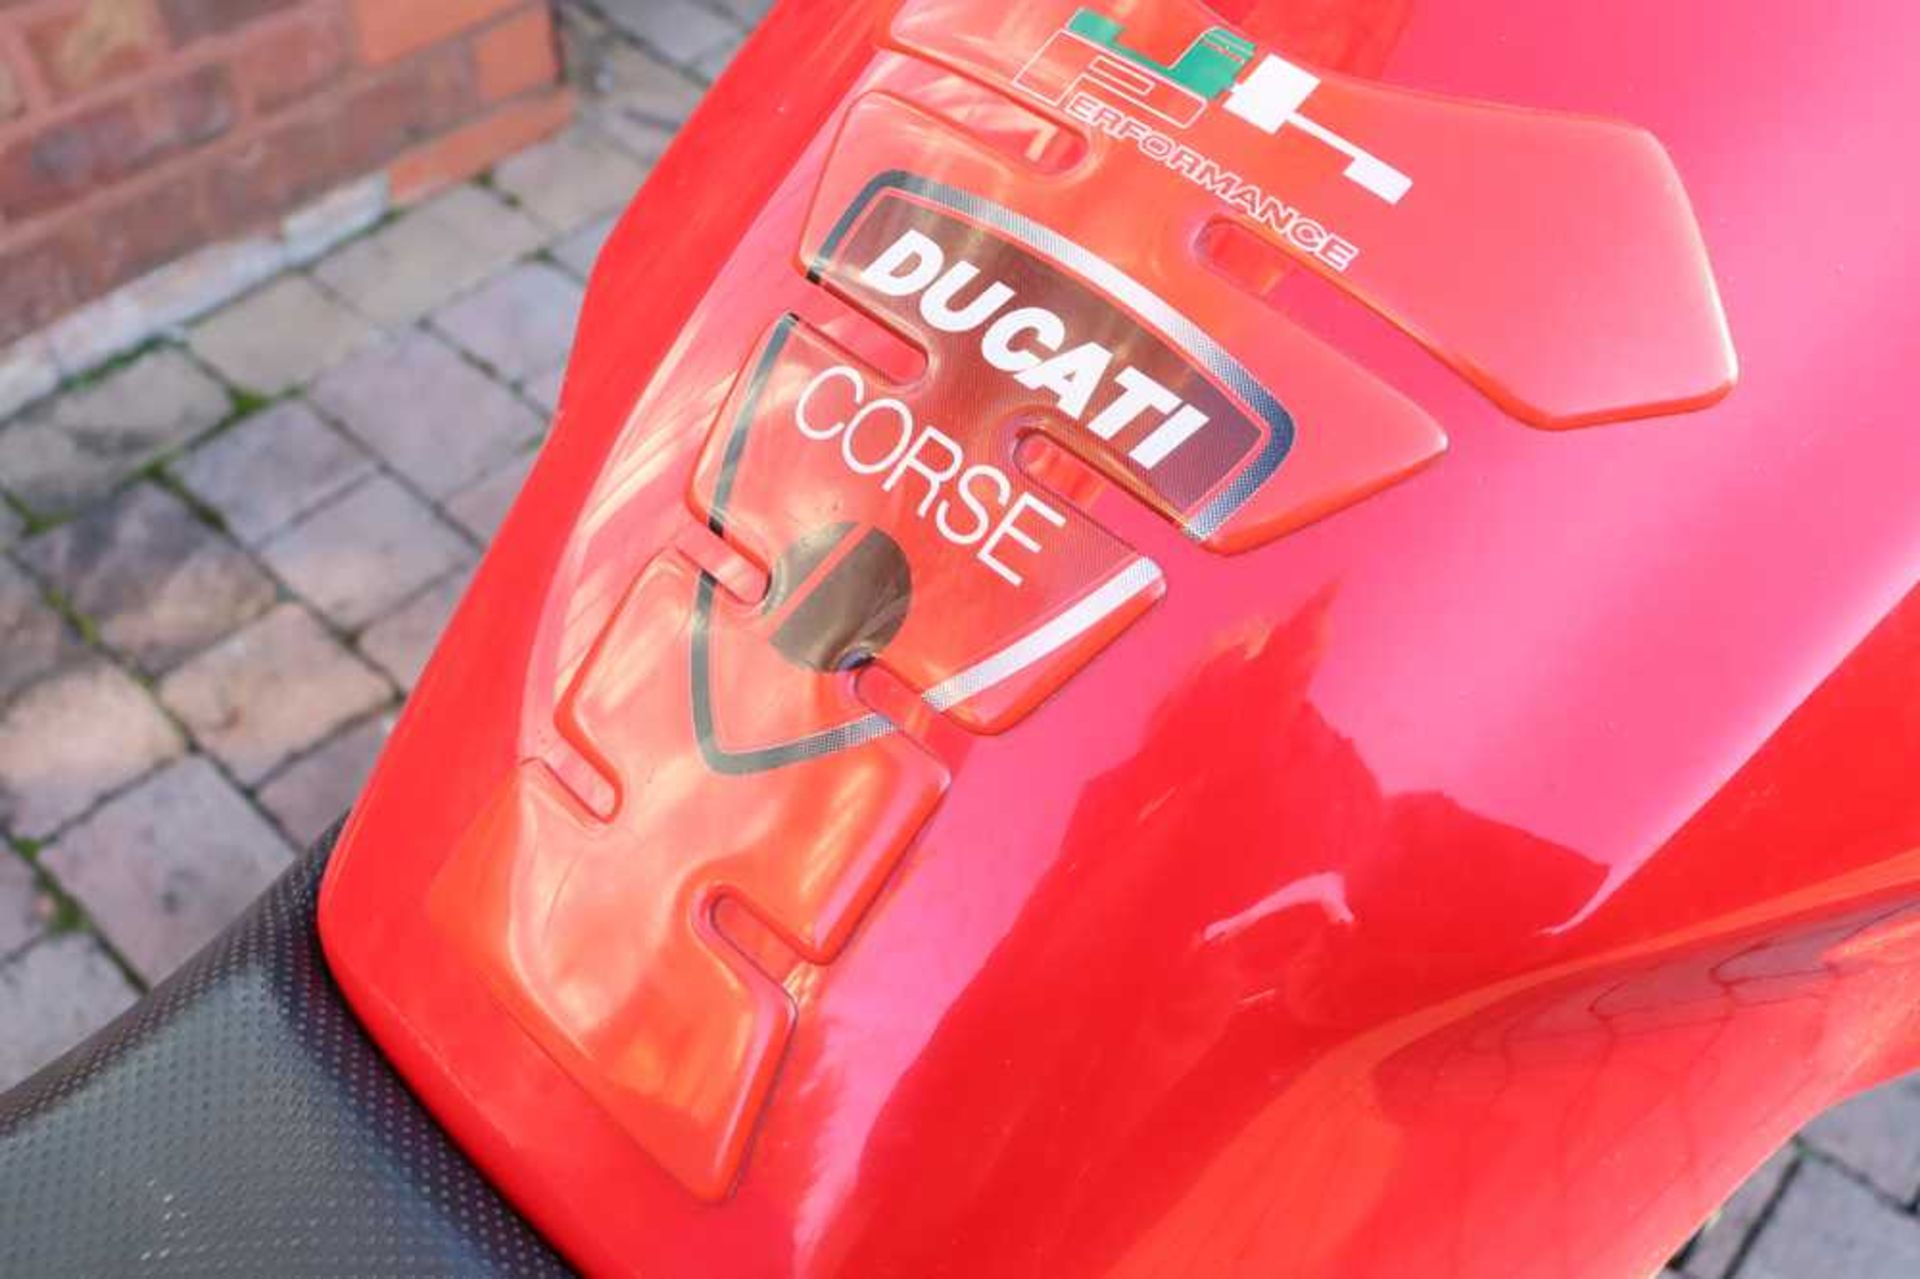 2003 Ducati Monster S4R 996 Desmoquattro Superbike engine - Image 8 of 54